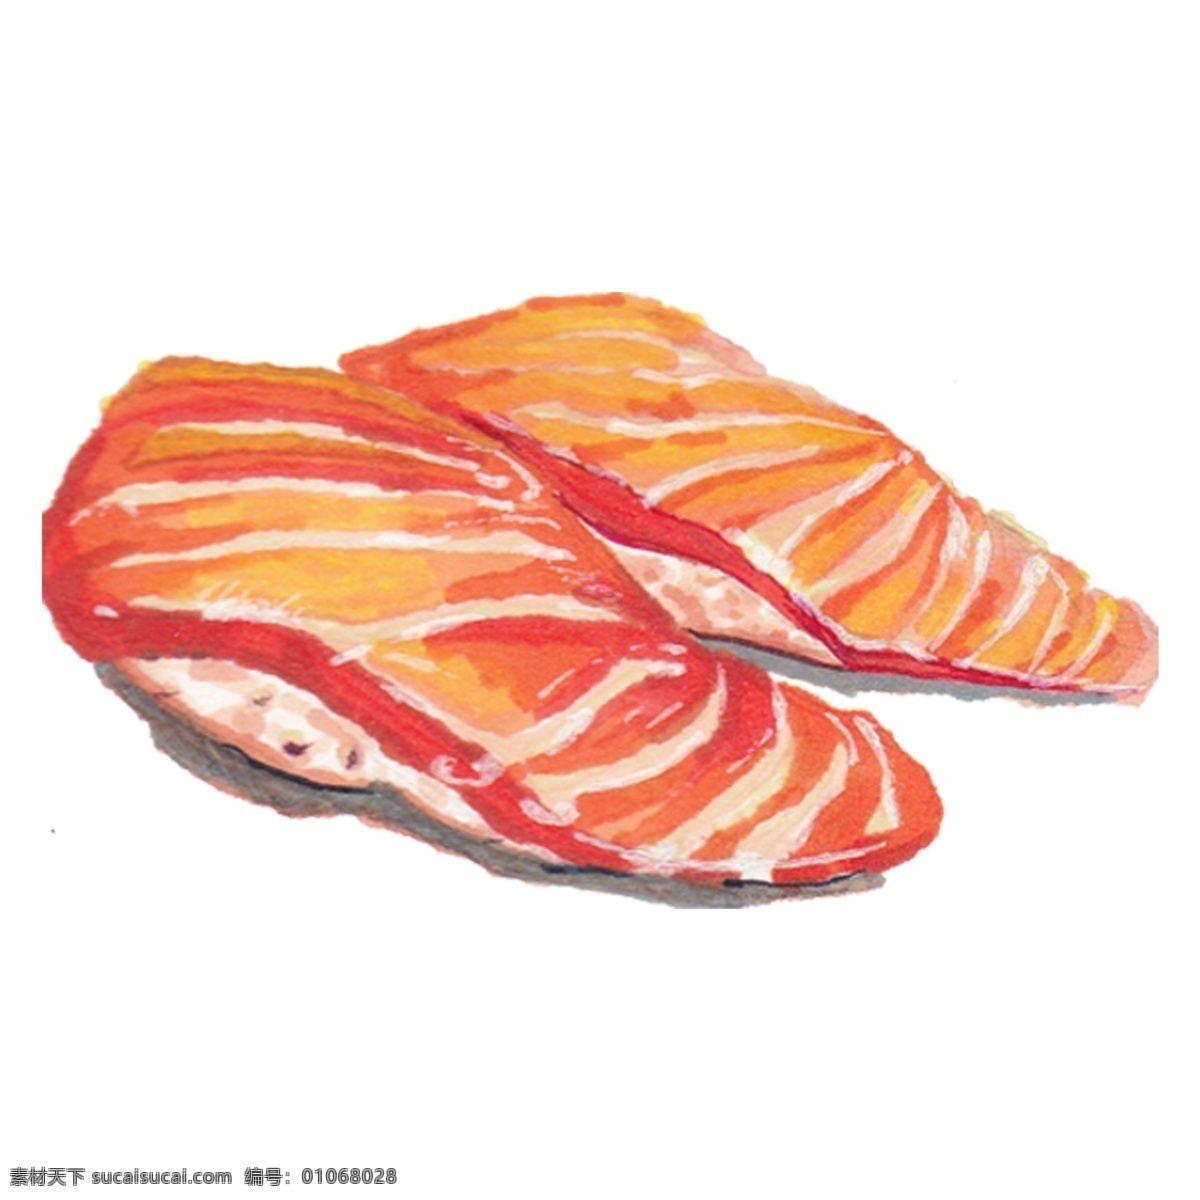 卡通 日式 生鱼片 免 抠 图 日式料理 三文鱼 卡通寿司 免抠寿司 三文鱼免抠图 免抠图下载